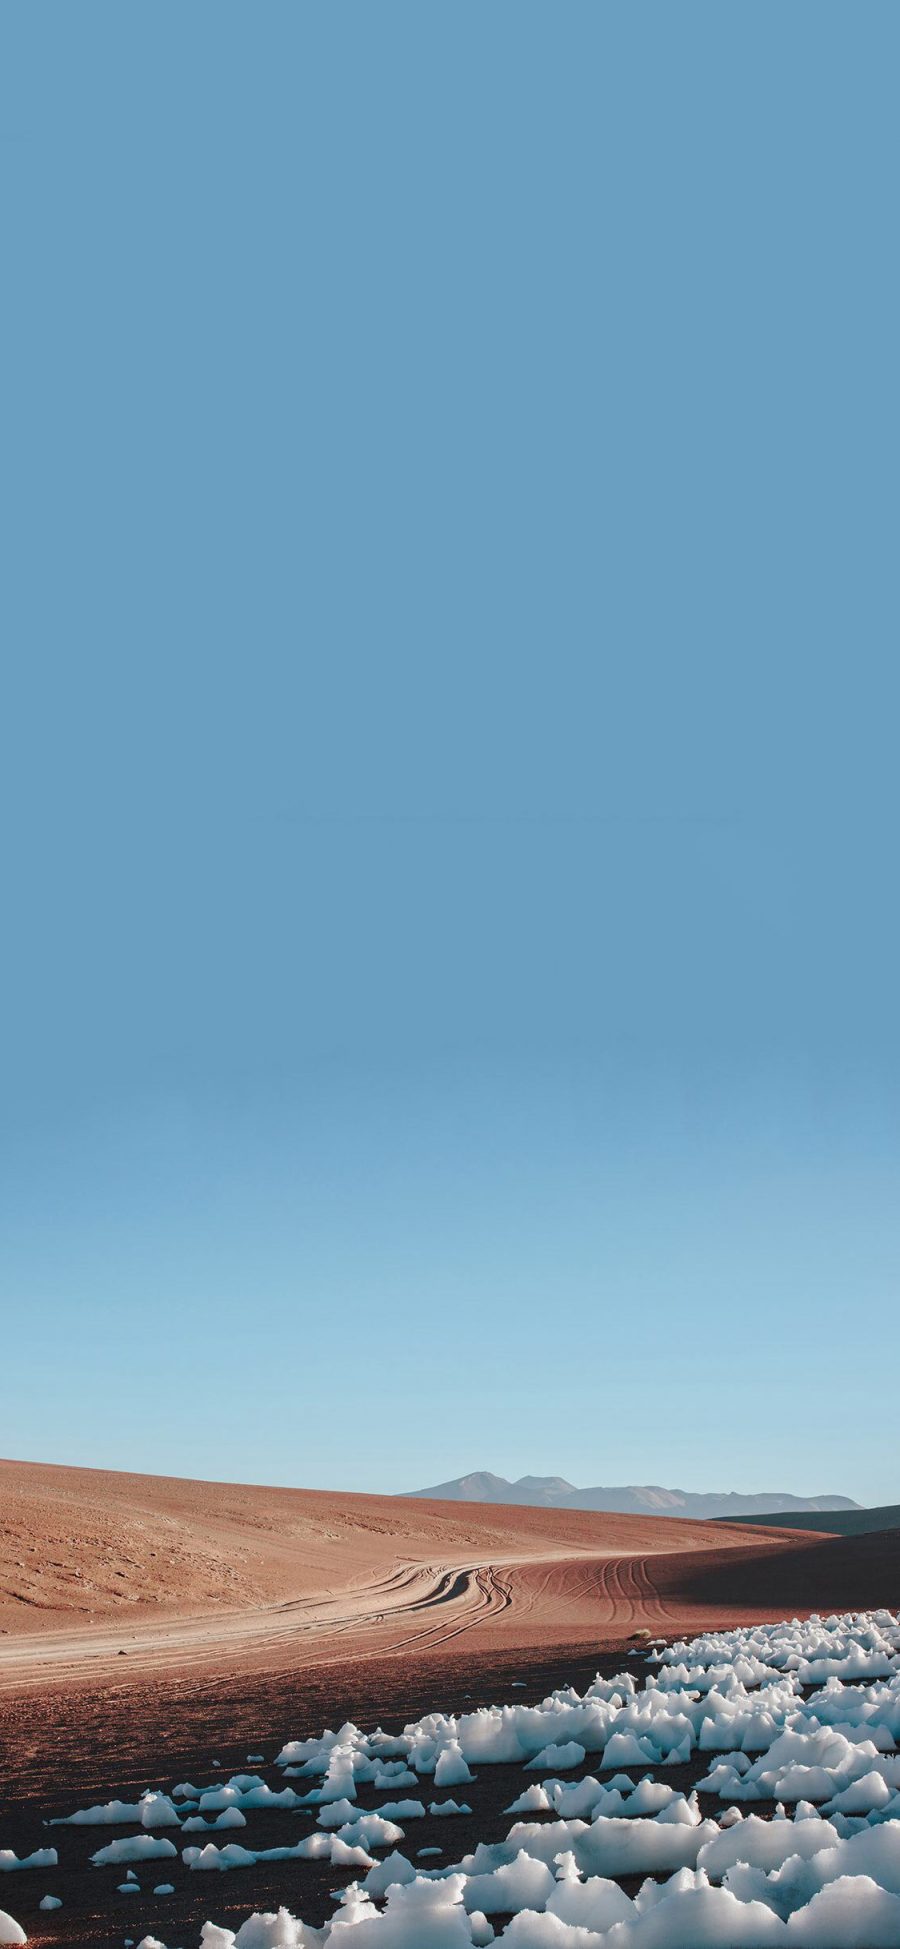 [2436×1125]荒漠 路 平原 冰块 积雪 苹果手机壁纸图片